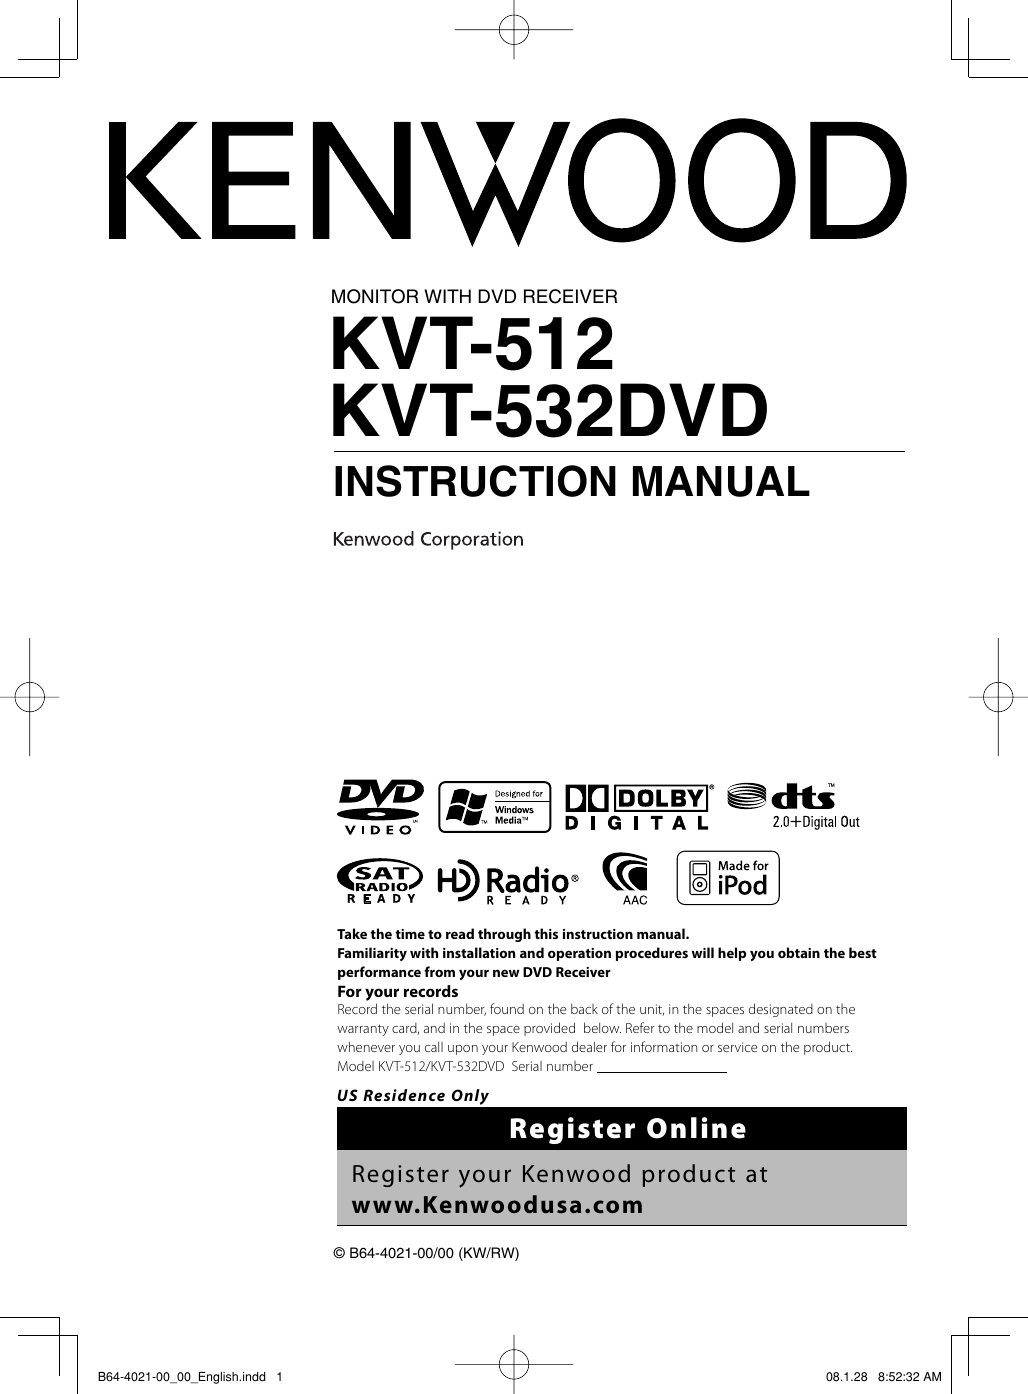 kenwood kvt 815dvd wiring diagram